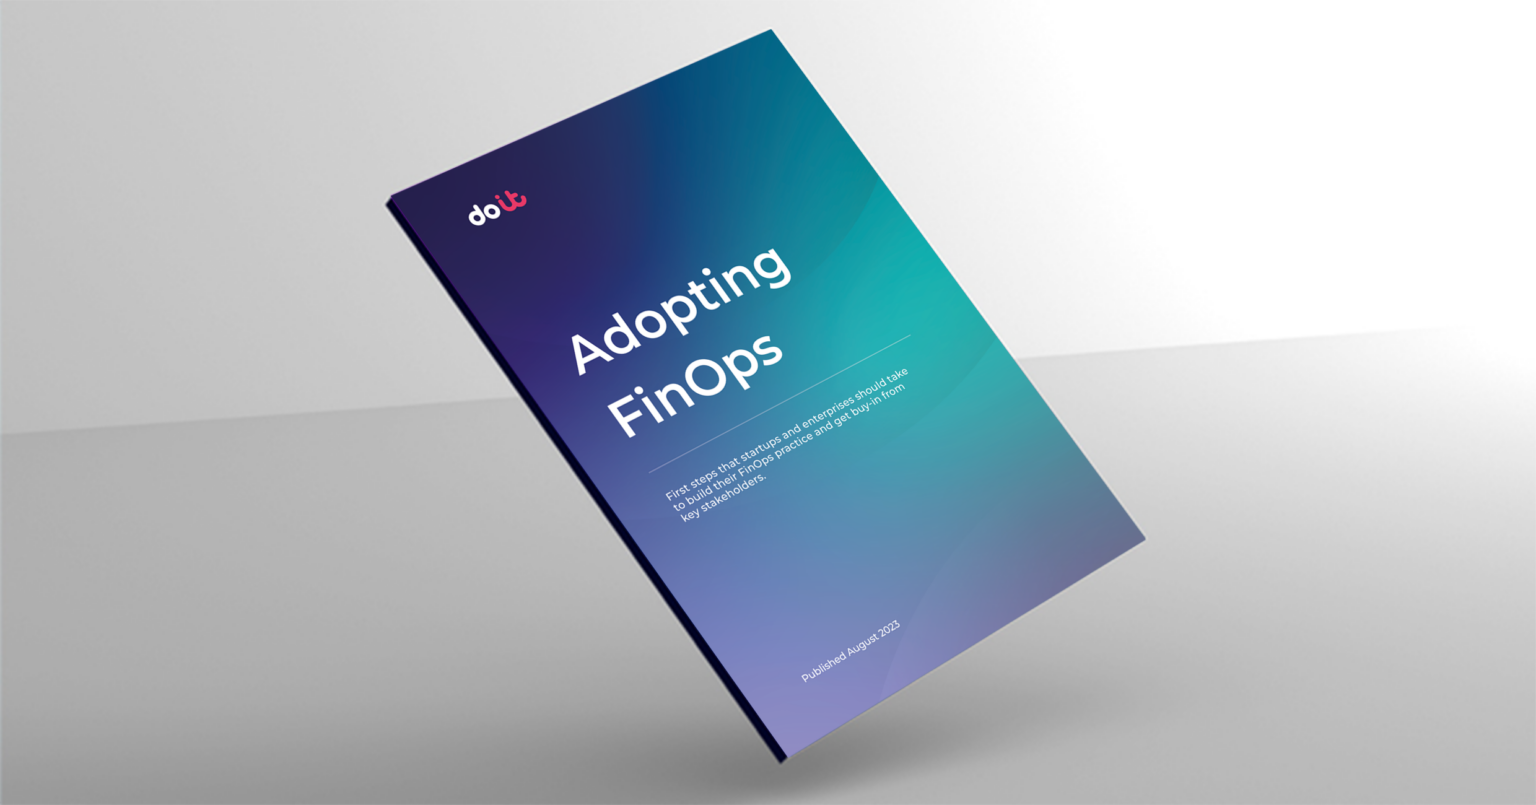 Adopting FinOps ebook